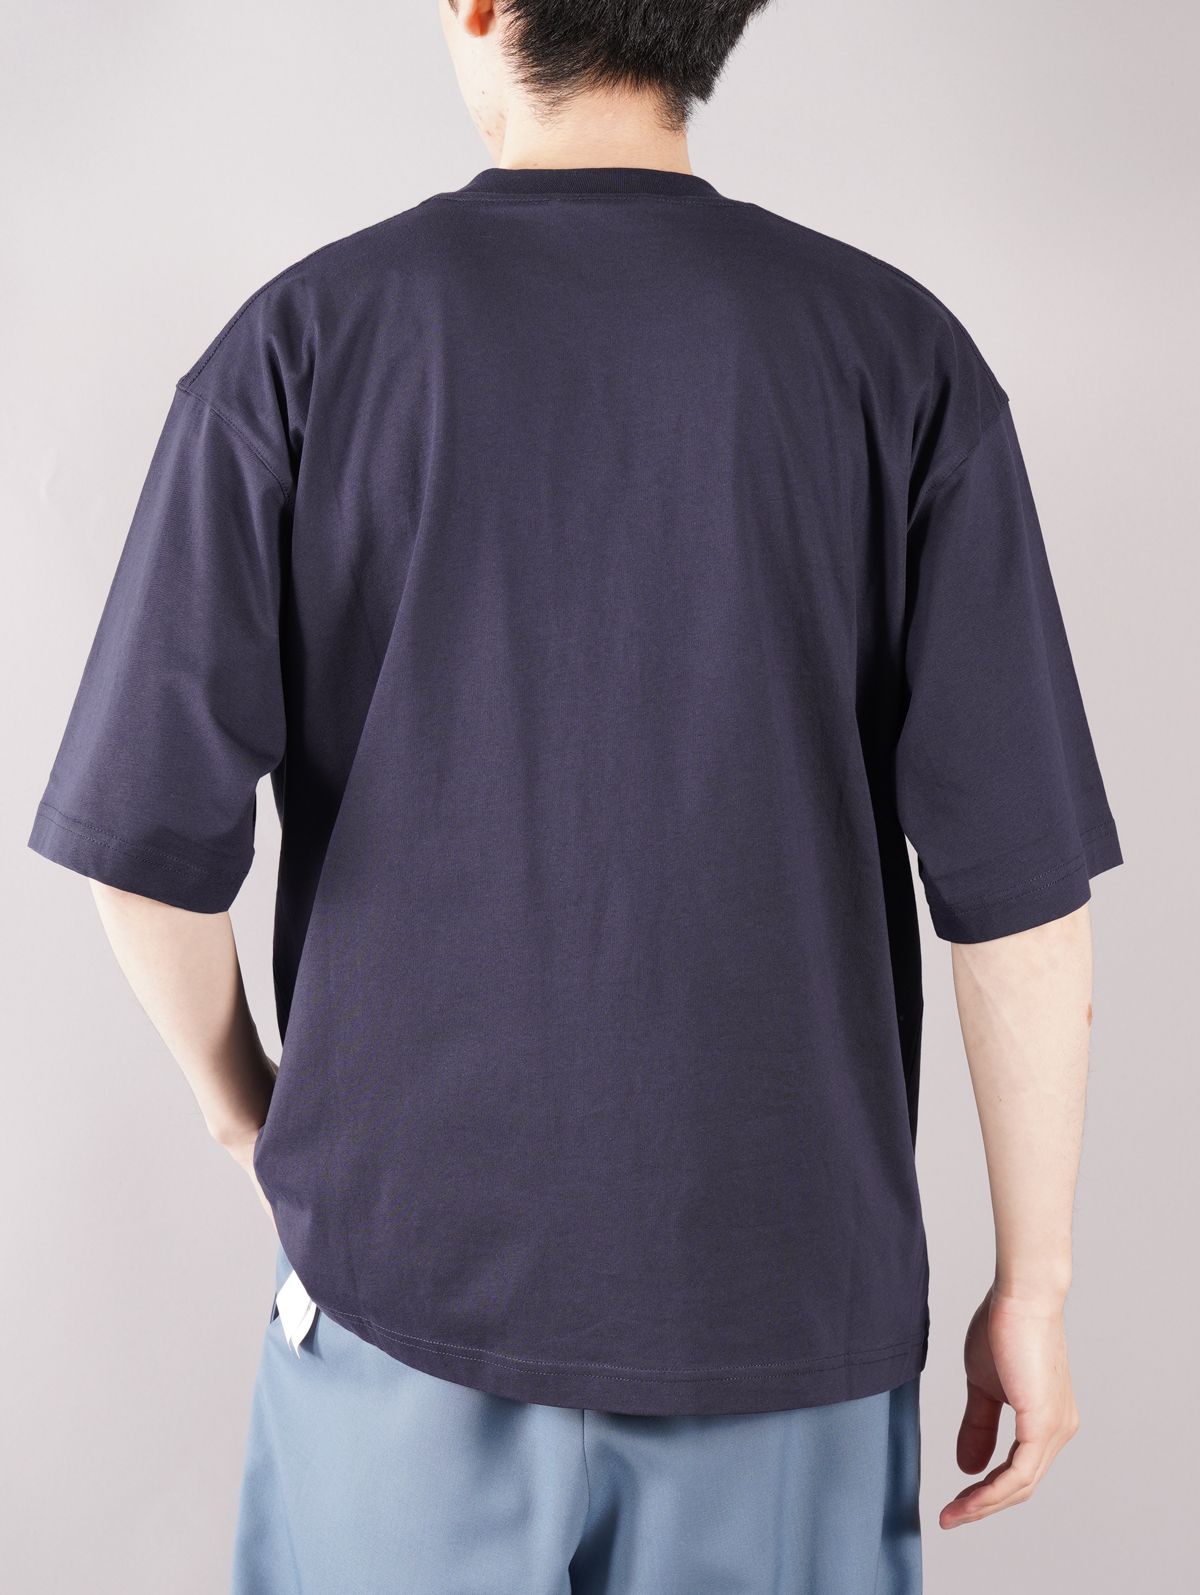 MARNI - 【ラスト1点】 LOGO T-SHIRT / ロゴ Tシャツ / オーバーサイズ